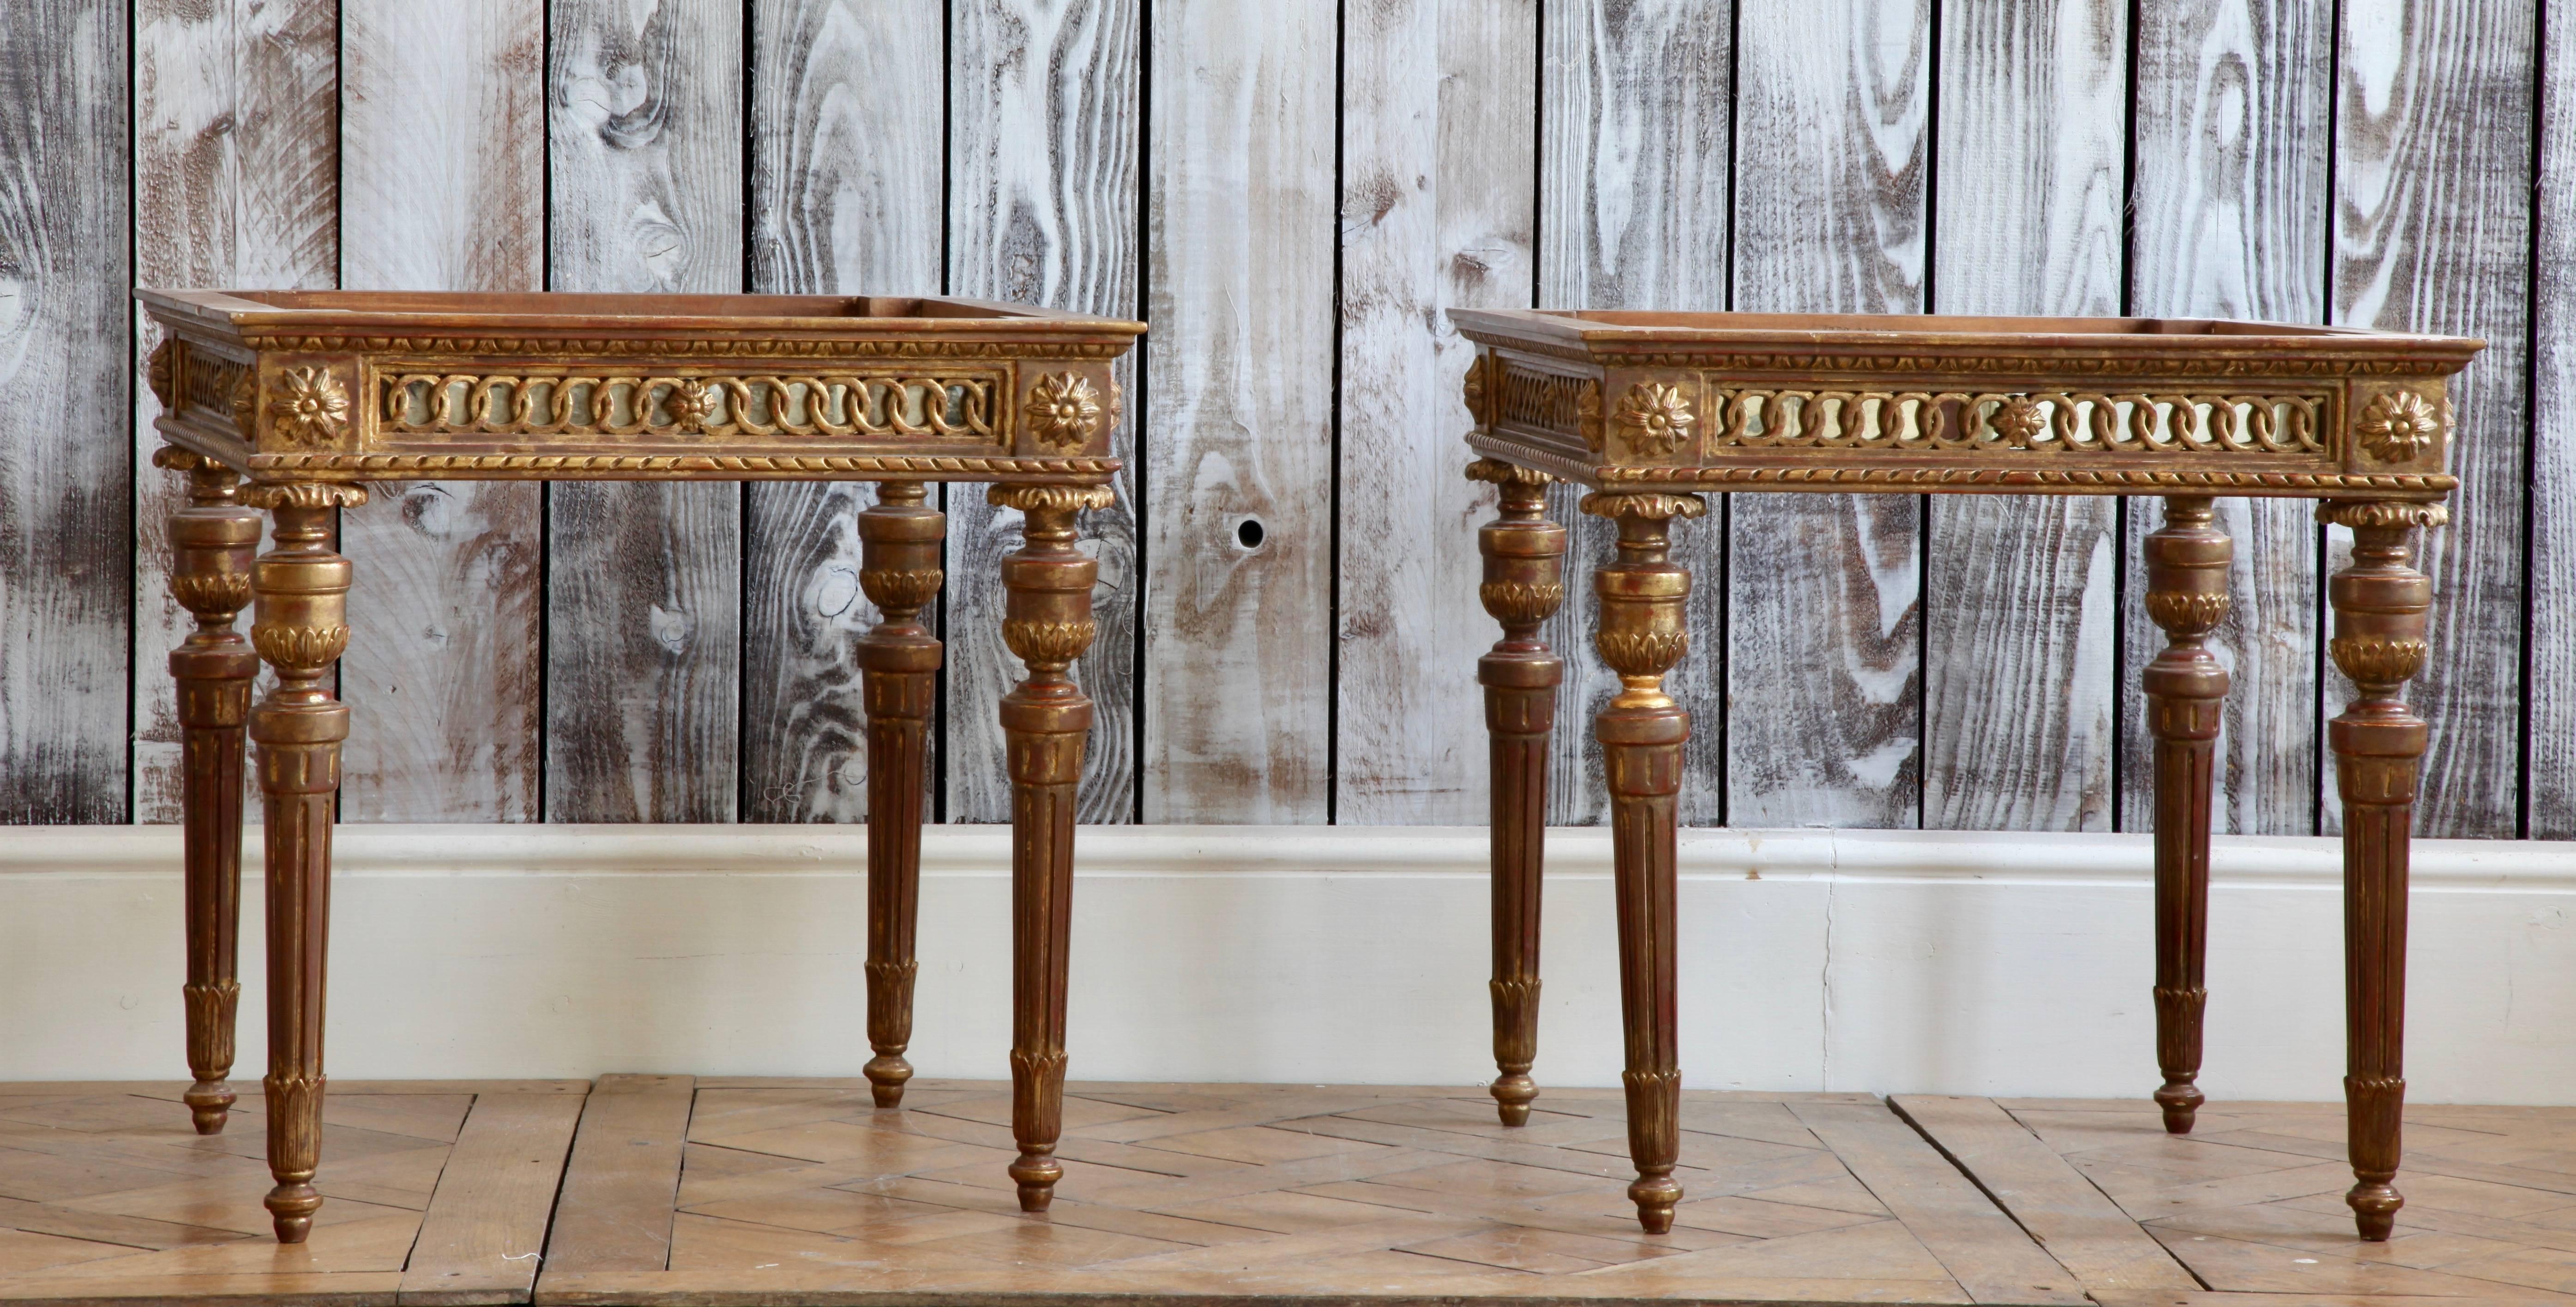 Couchtische / Beistelltische aus massivem Holz im Louis XVI-Stil, handgeschnitzt.
Feine Details mit filigraner Arbeit, hinterlegt mit antikem Spiegelglas (ähnlich der venezianischen Arbeit aus dem 18. Jahrhundert).
Die Tische haben eine gealterte